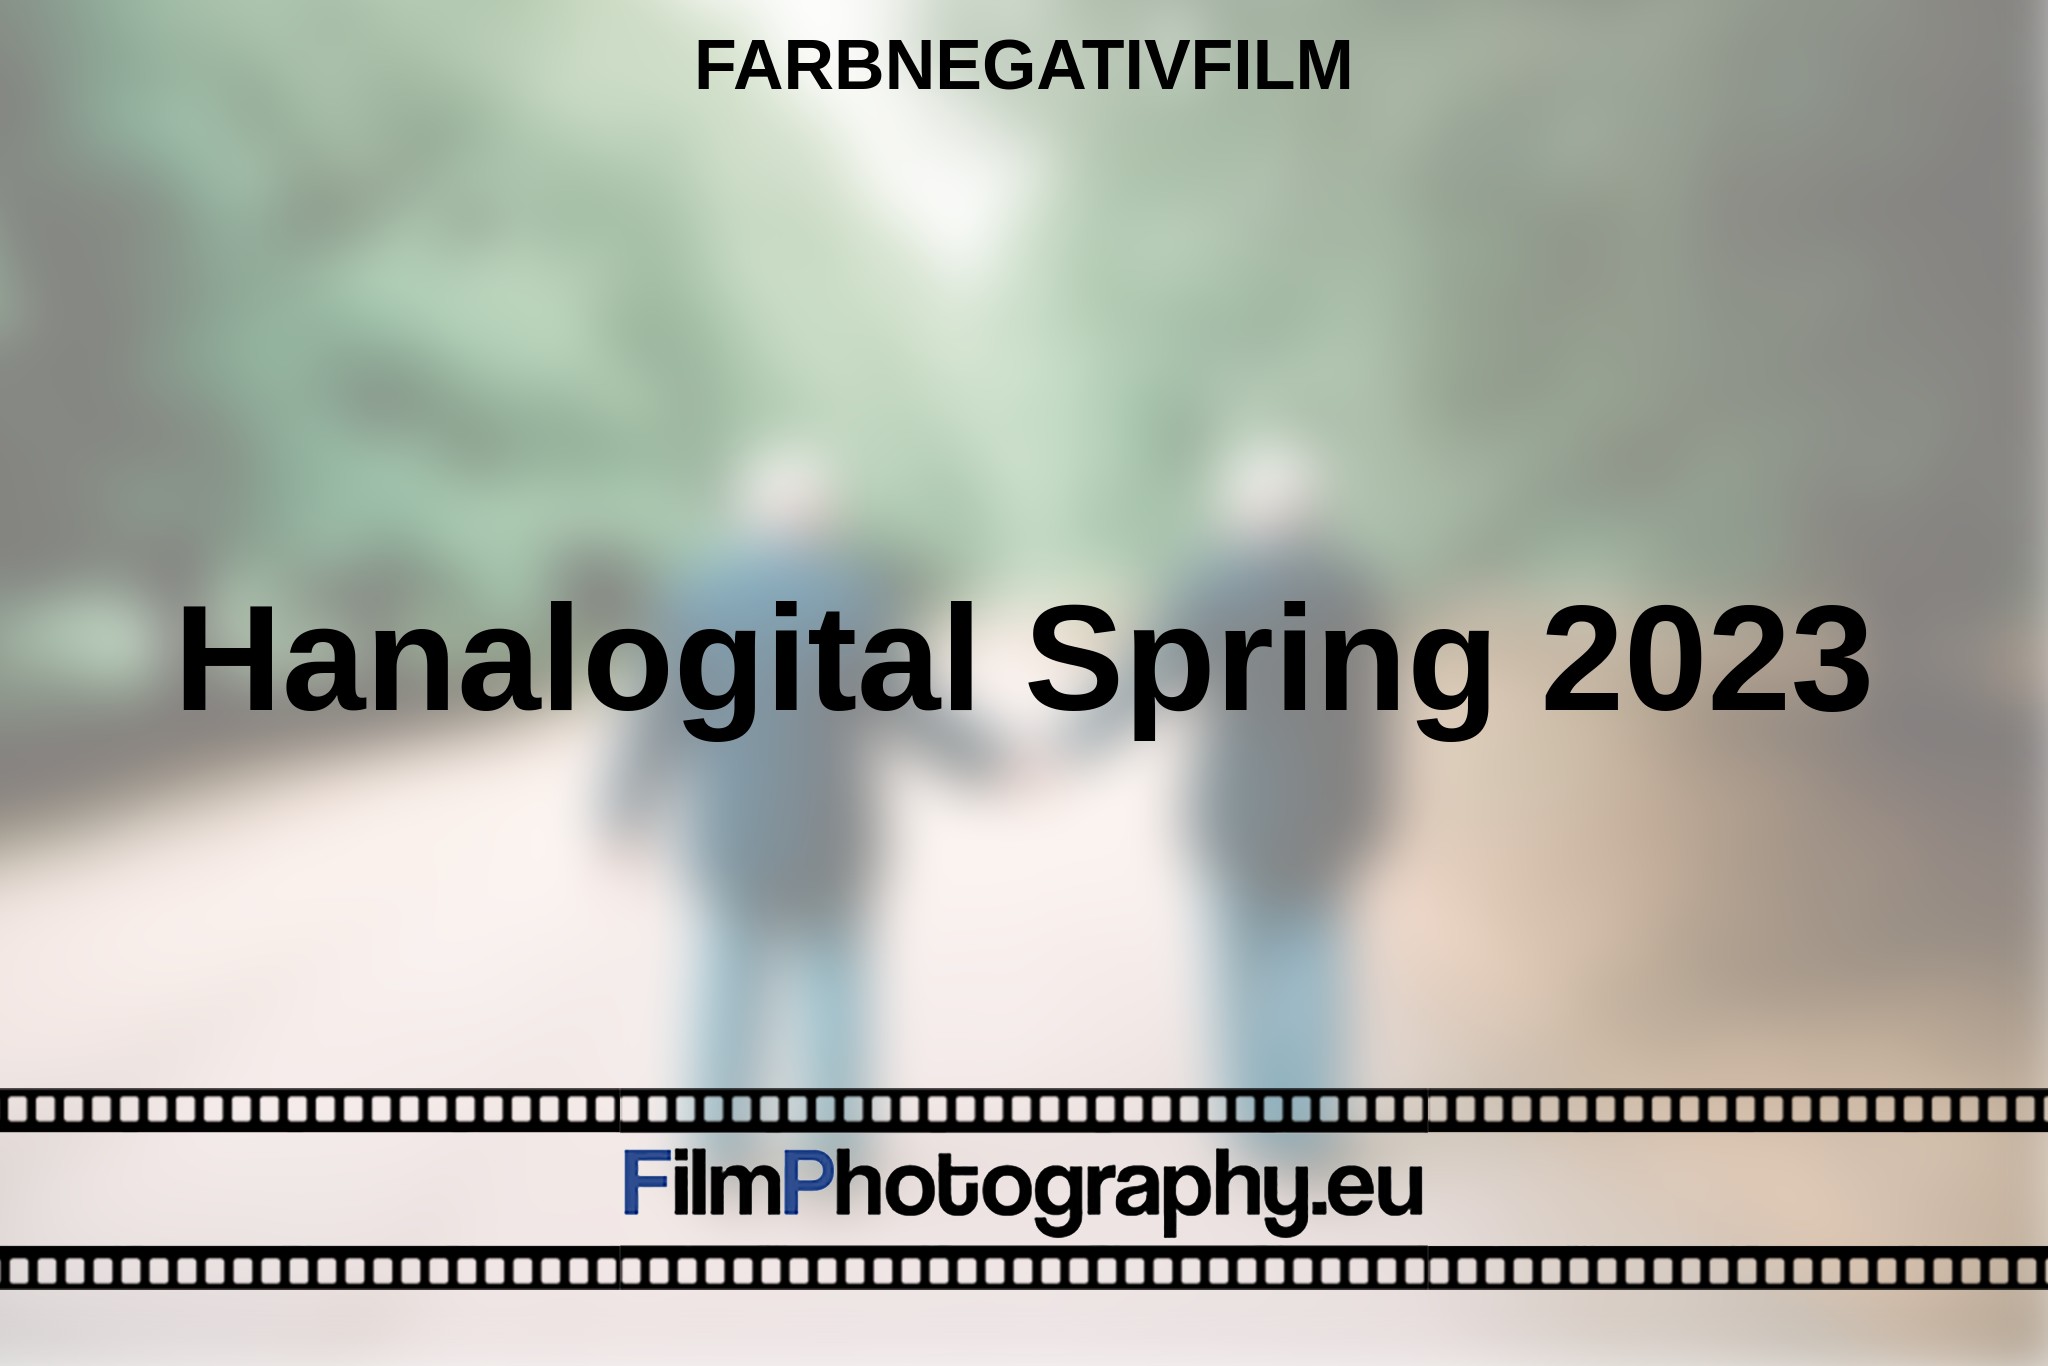 hanalogital-spring-2023-farbnegativfilm-bnv.jpg